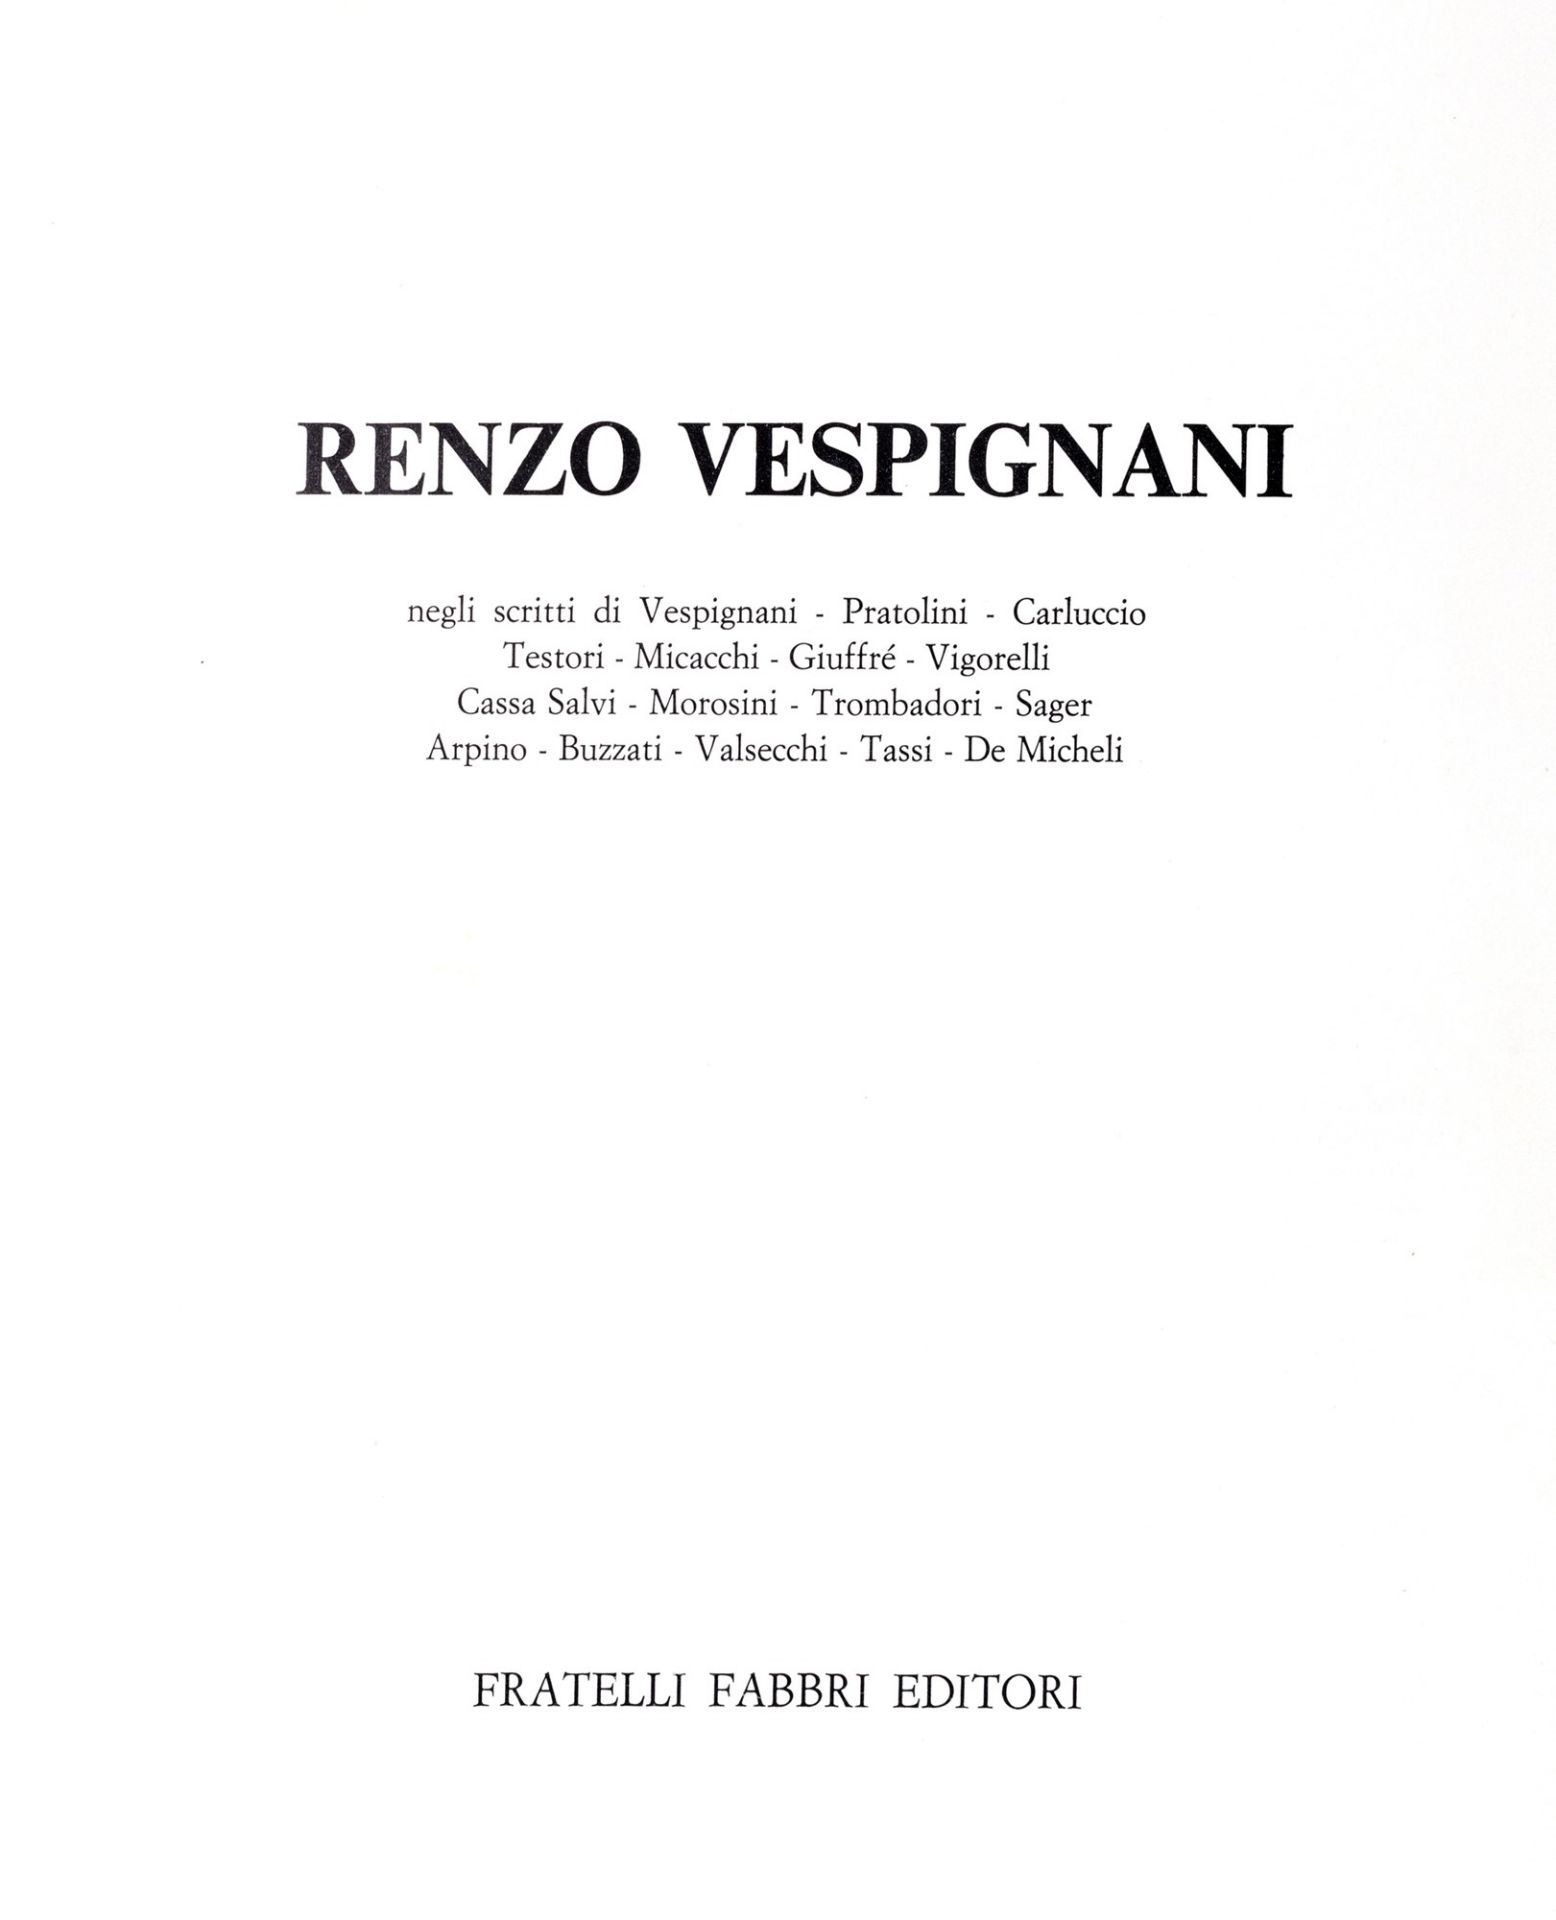 Vespignani, Renzo - Renzo Vespignani